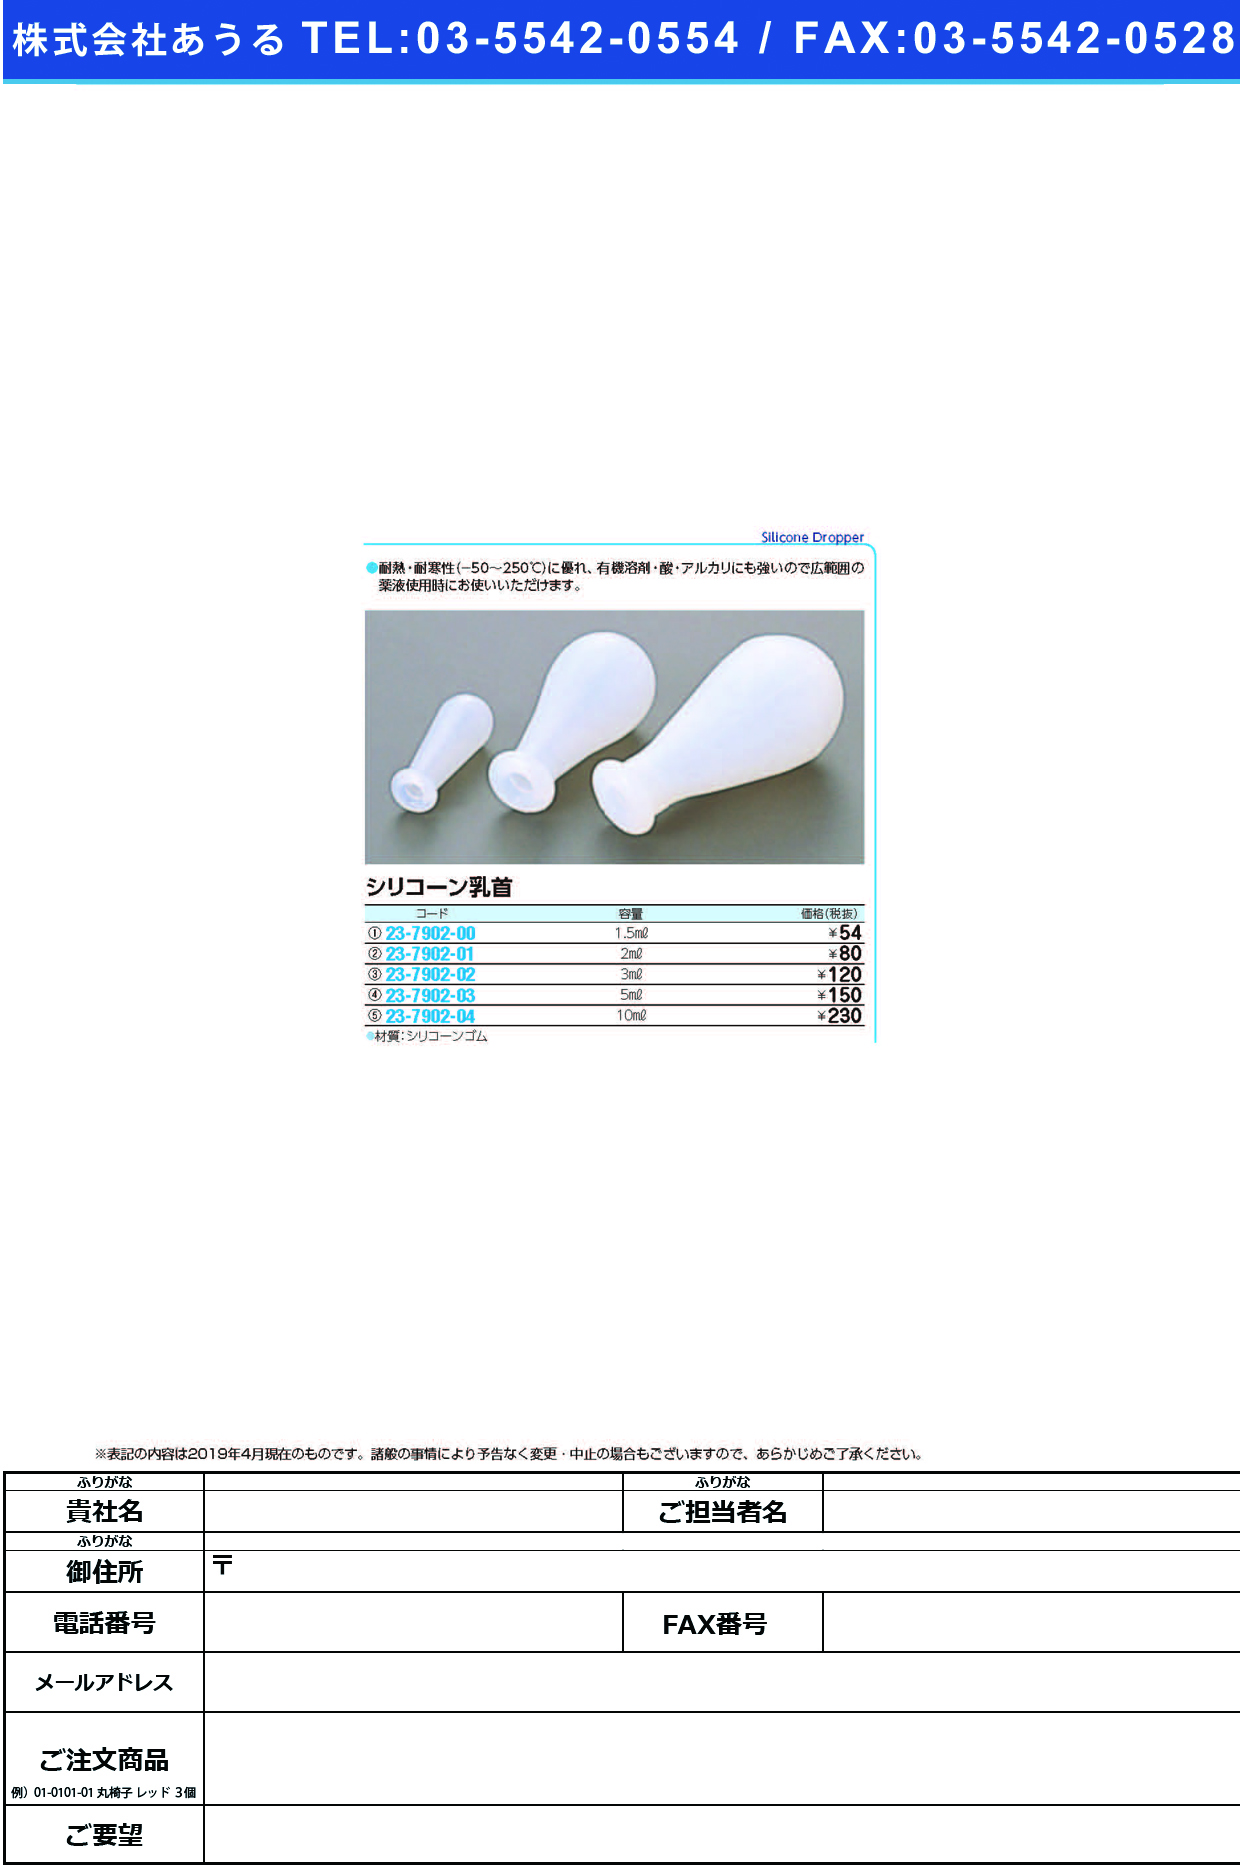 (23-7902-01)シリコーン乳首 01-327-02(2ML) ｼﾘｺｰﾝﾁｸﾋﾞ【1個単位】【2019年カタログ商品】